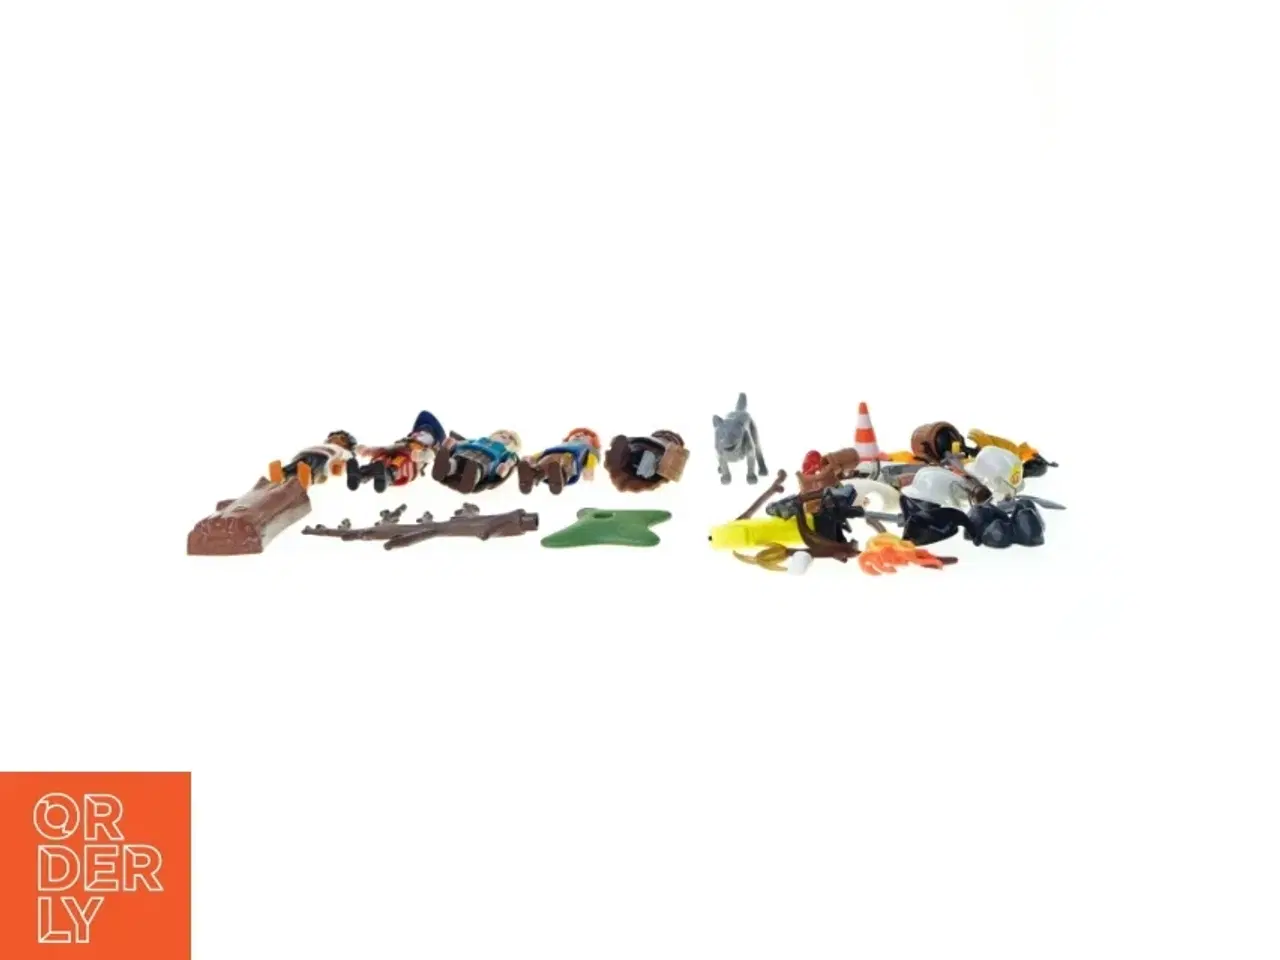 Billede 2 - Blandet playmobil fra PLAYMOBIL (str. 8 cm)